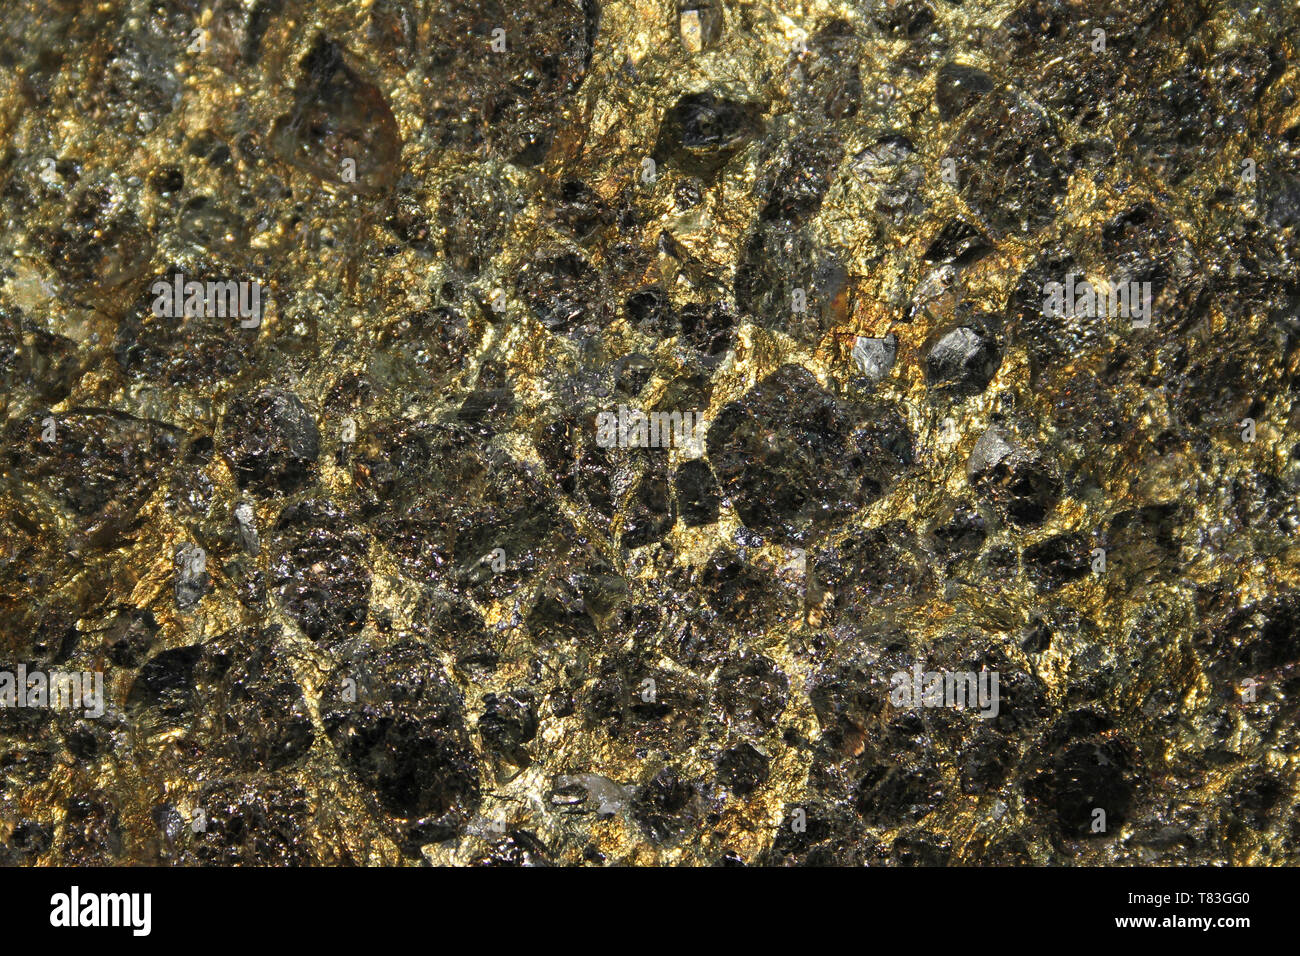 La chalcopyrite un sulfure de fer cuivre minéral et cristaux de pyrite Banque D'Images